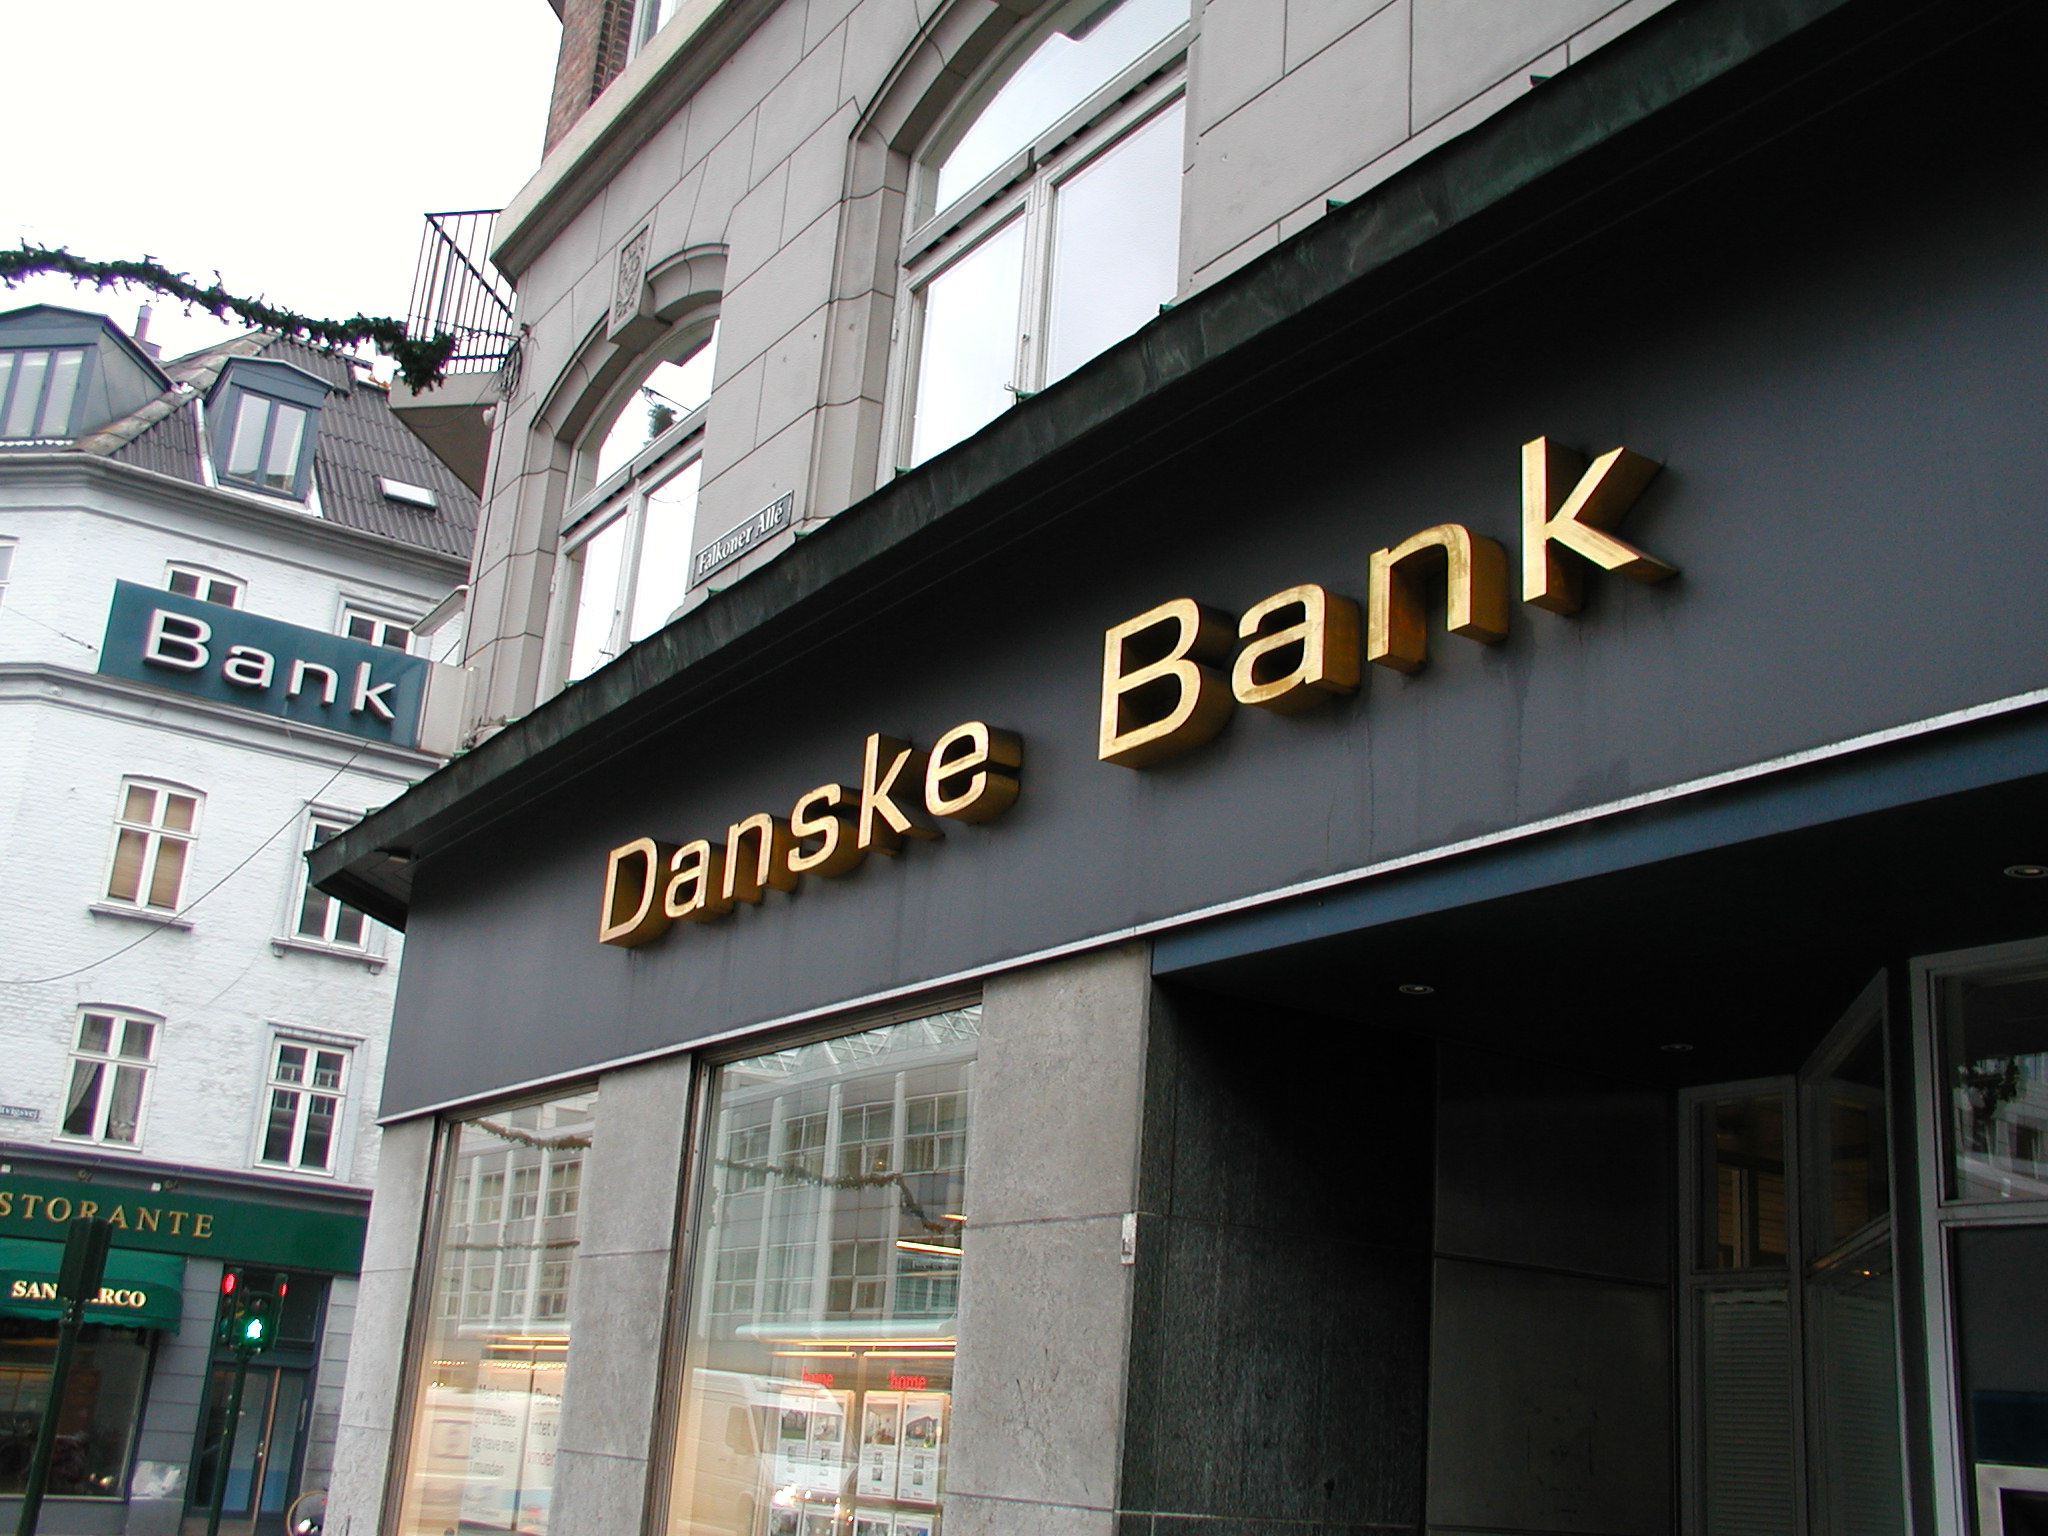 tabus danske bank building office sign gold letters